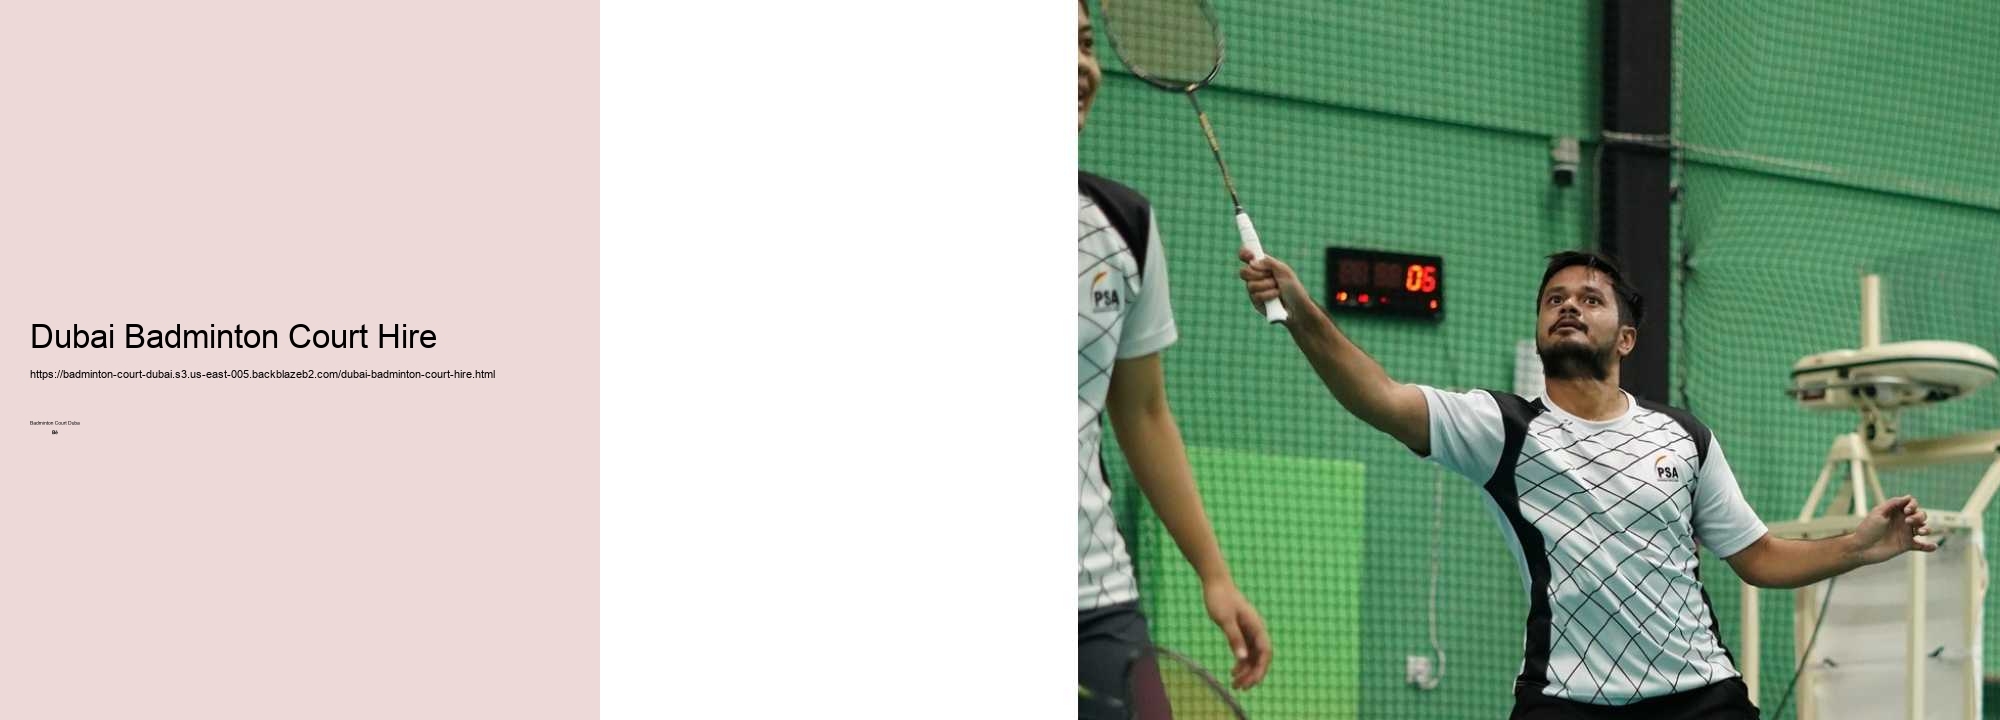 The Role of Badminton in Dubai's Sports Culture 